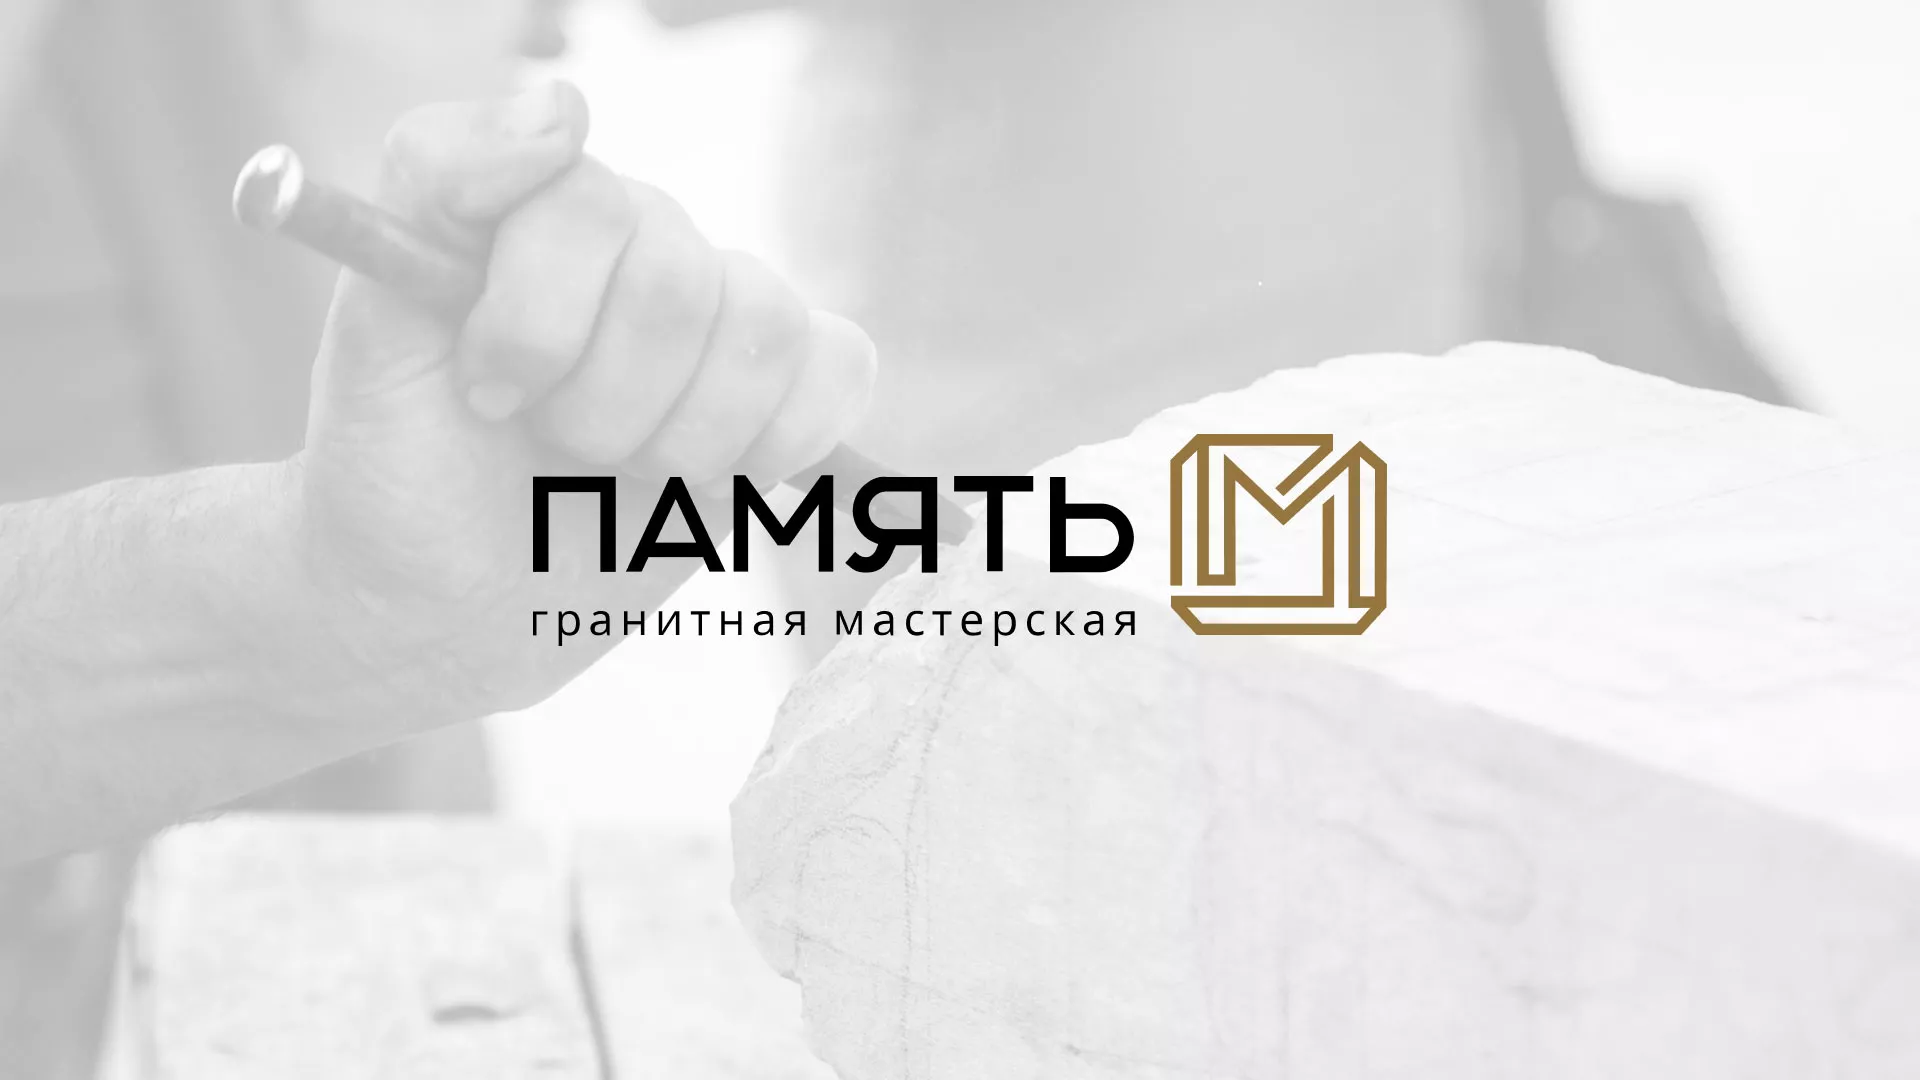 Разработка логотипа и сайта компании «Память-М» в Болгаре